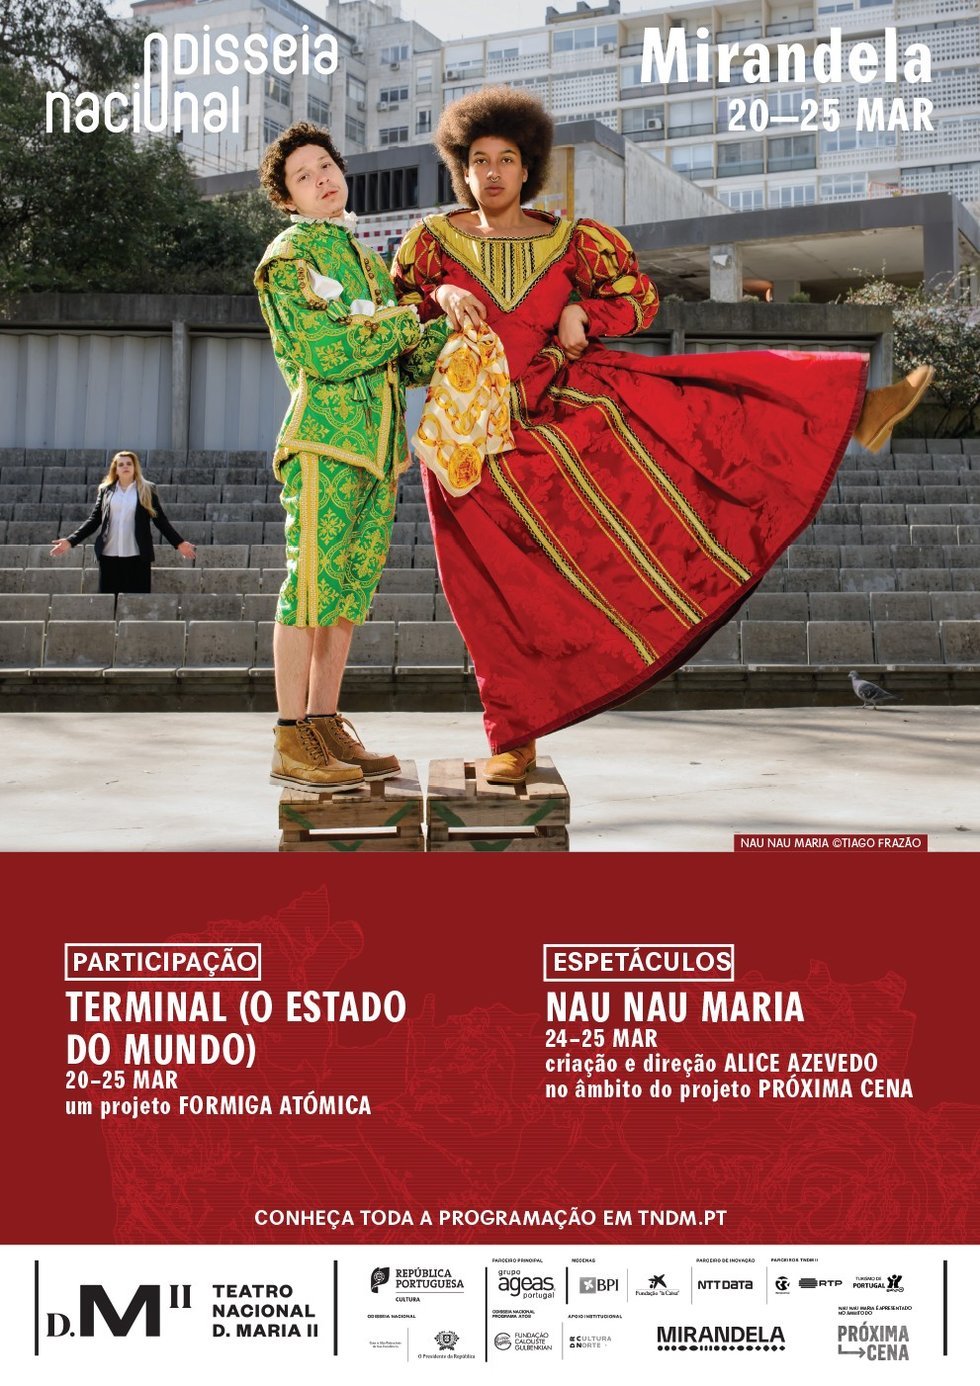 Odisseia Nacional - Teatro D. Maria II